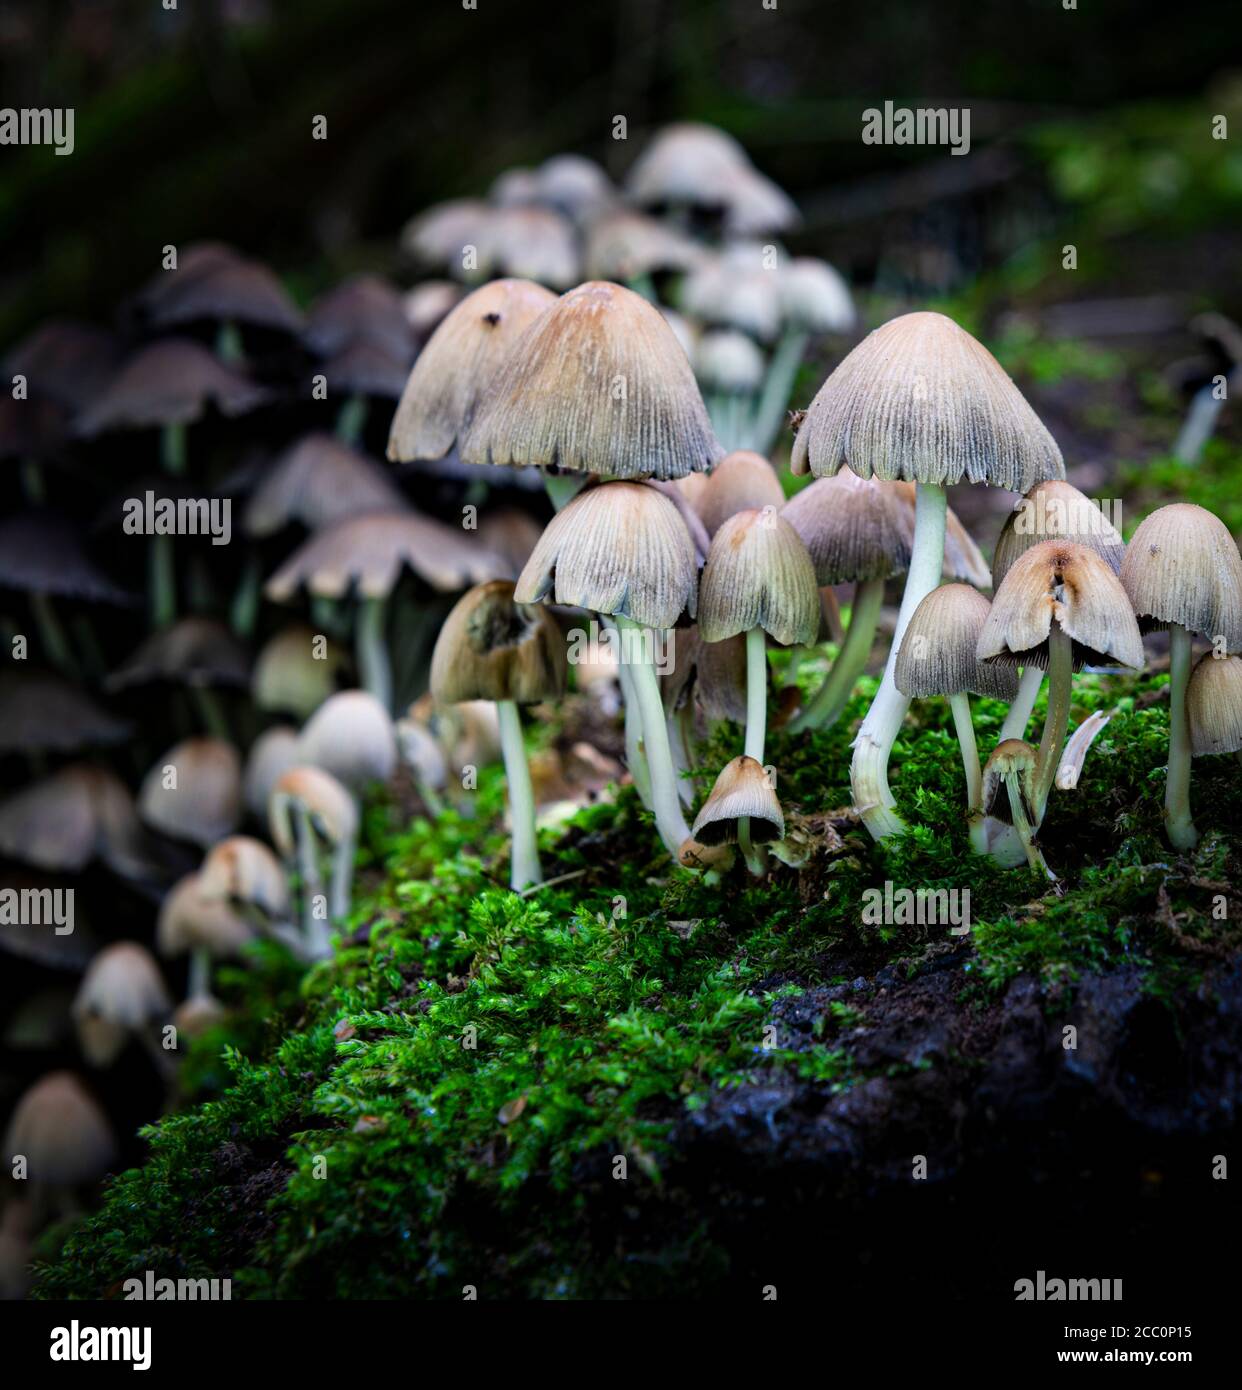 Tabourets ou champignons poussant sur un arbre recouvert de mousse ancienne (mort) dans une forêt au Royaume-Uni. Banque D'Images